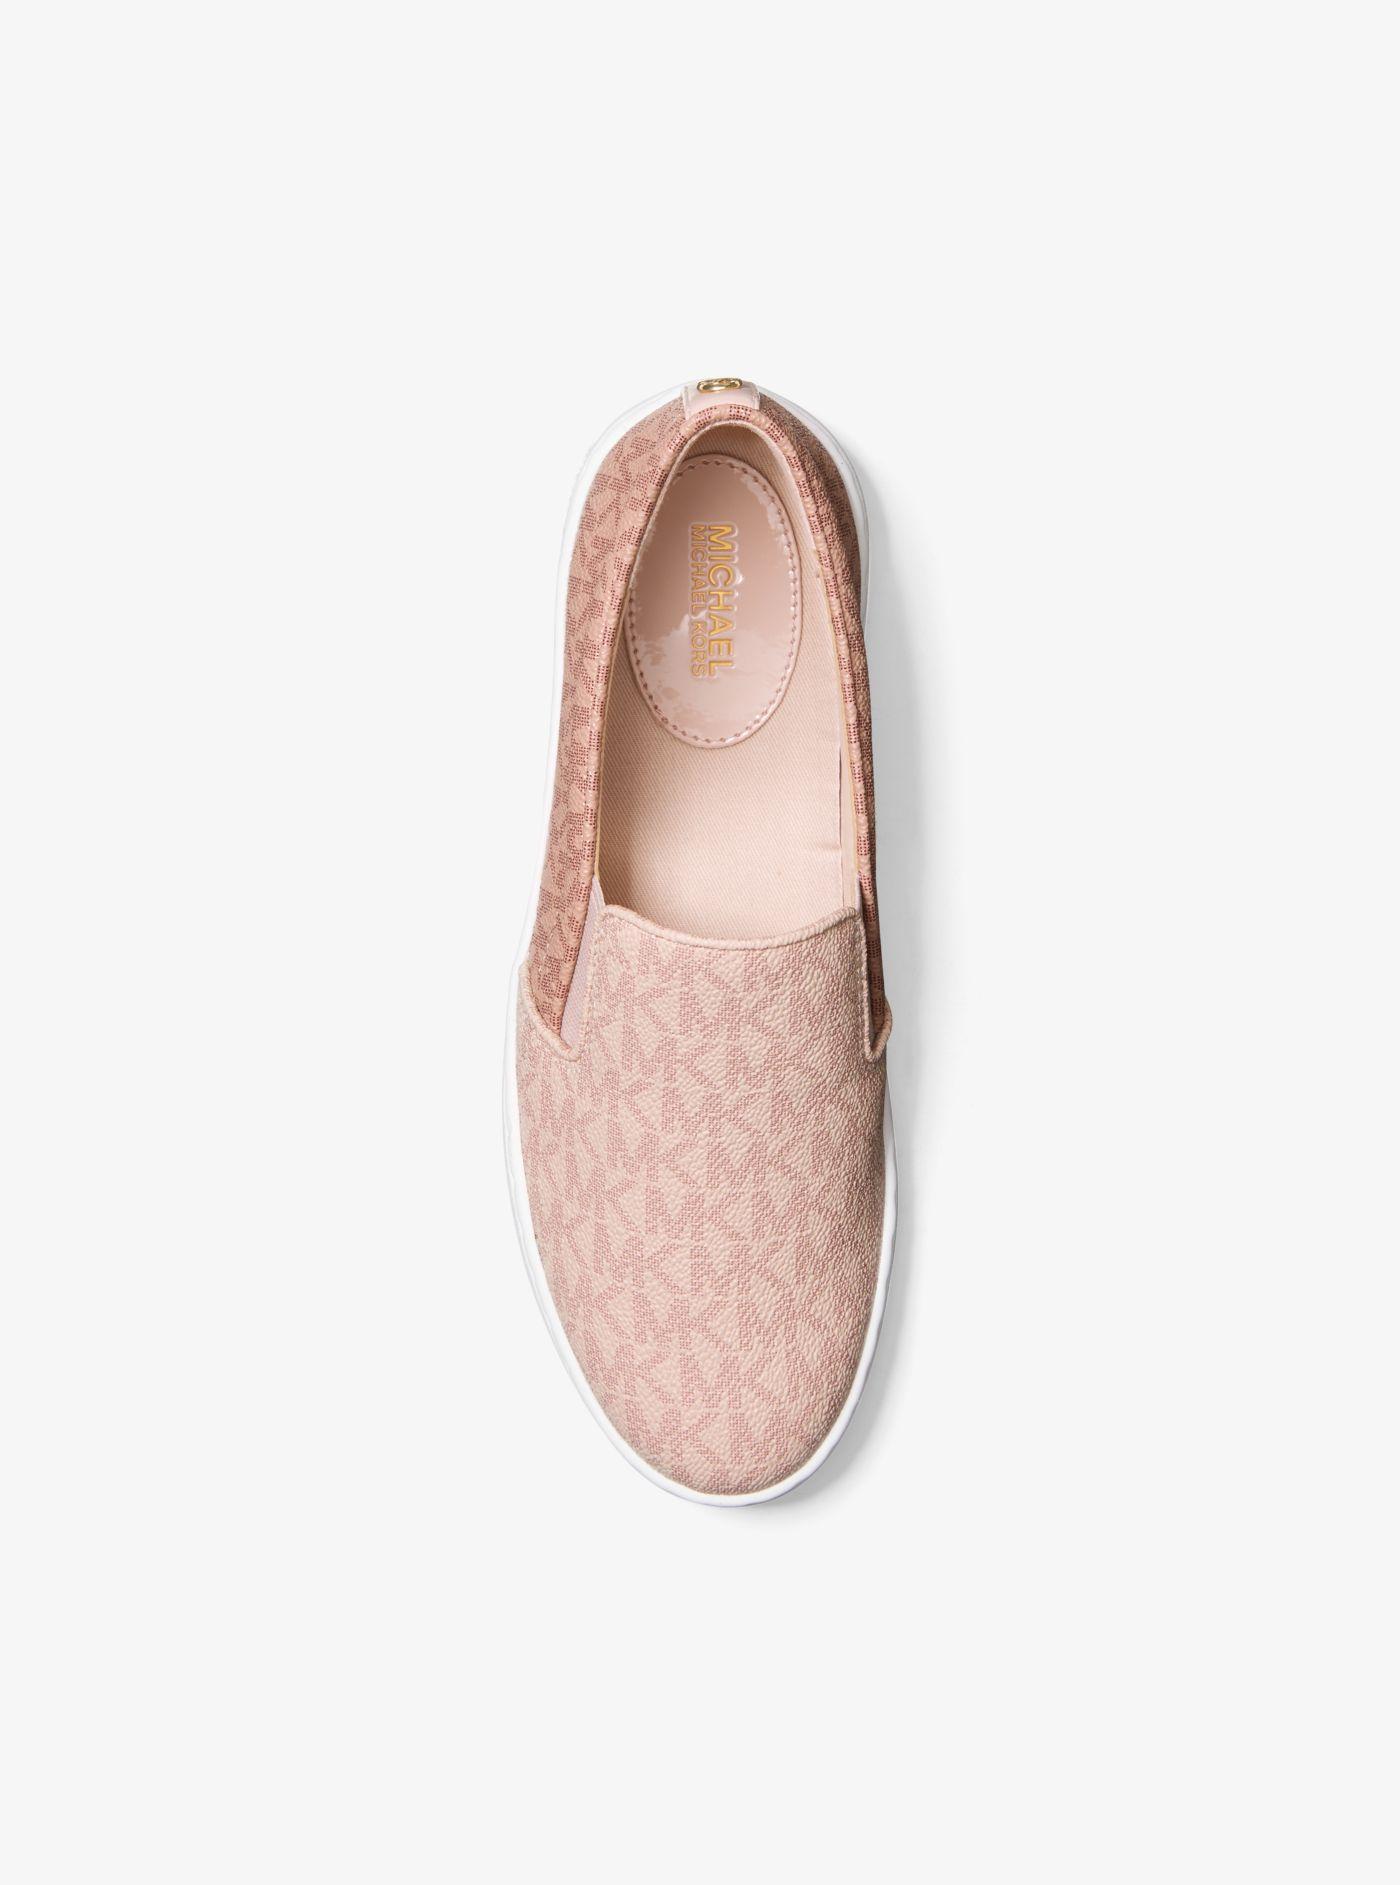 Michael Kors Keaton Two-tone Logo Slip-on Sneaker in Pink | Lyst